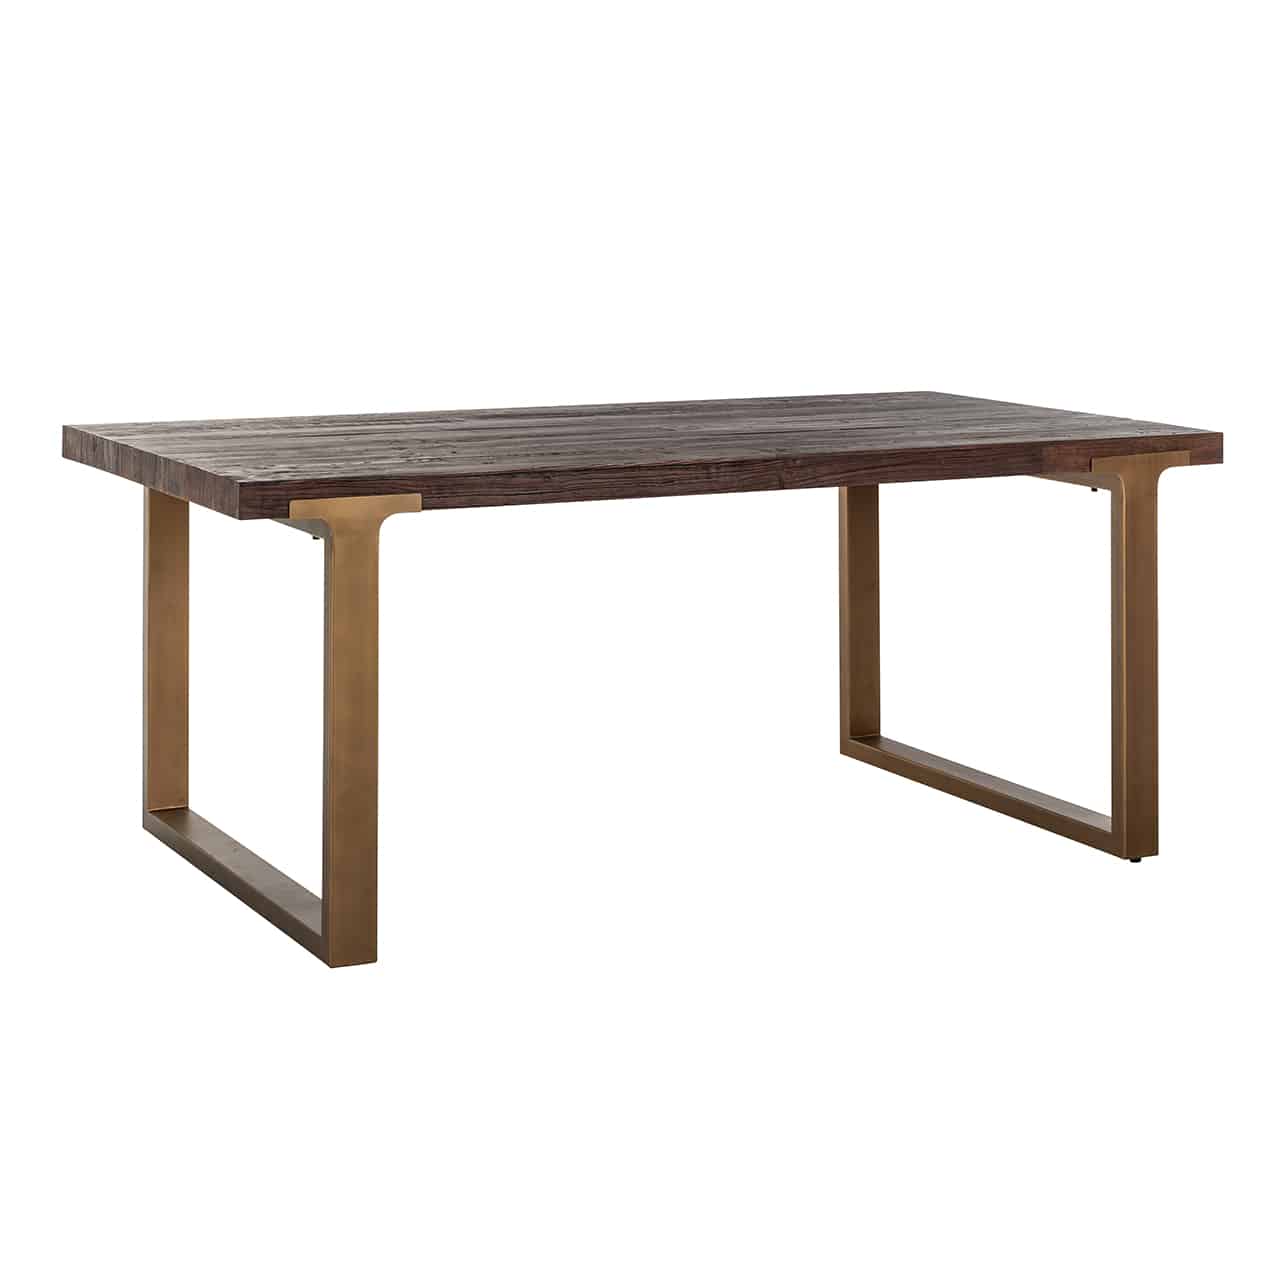 Esstisch beidseitig mit breiten Kufen aus matt goldenem Edelstahl, darauf eine lange, rechteckige Tischplatte aus recyceltem Ulmenholz.